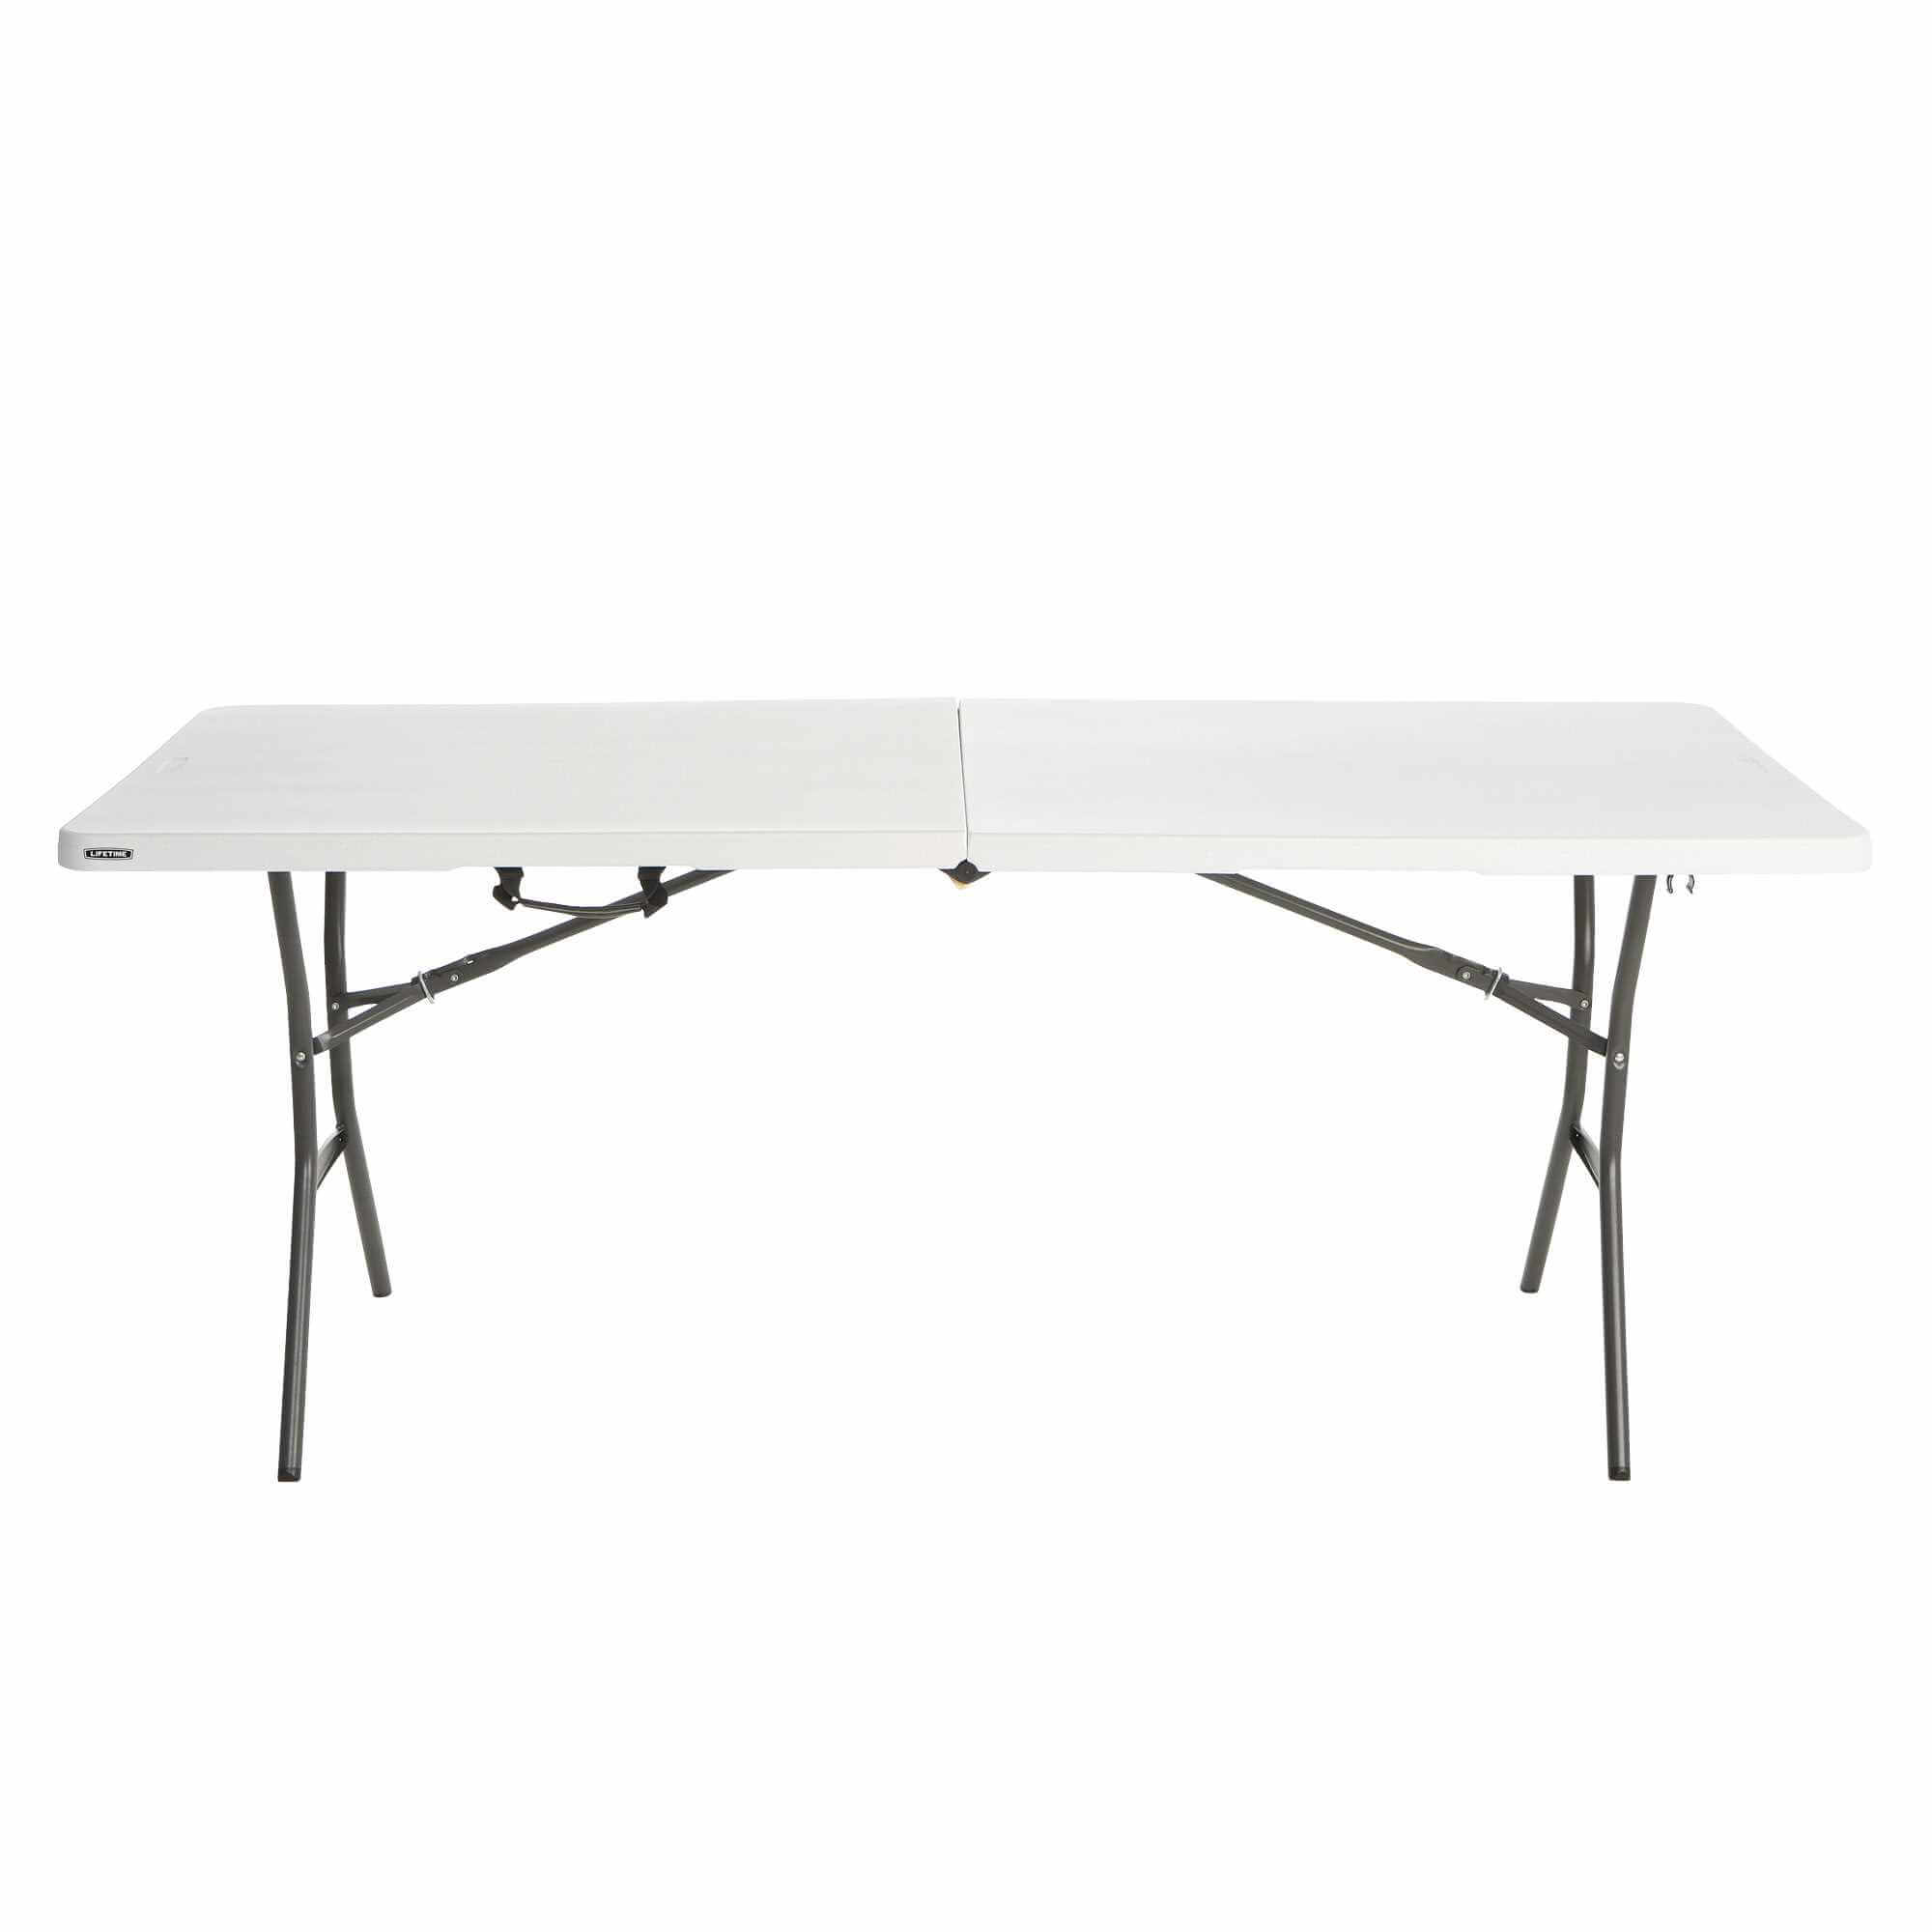 Table pliable en 2 (valise) rectangulaire 183cm / 8 personnes